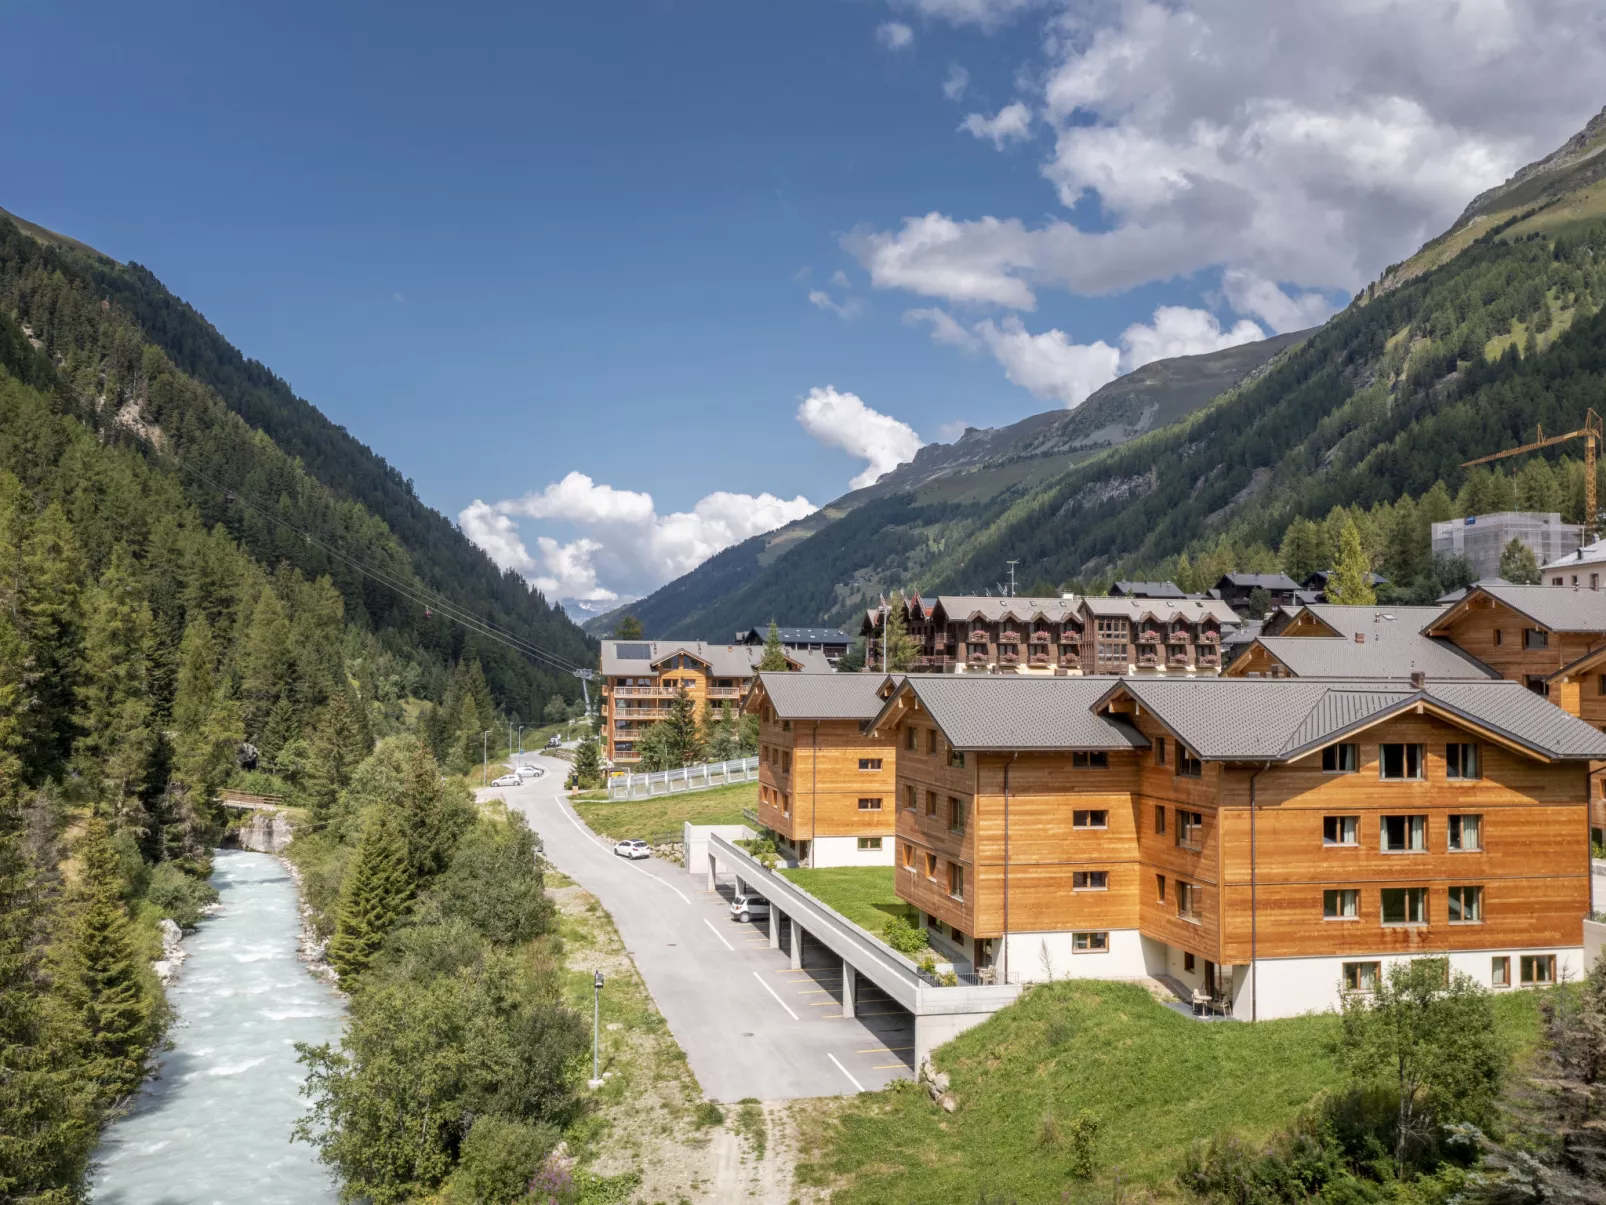 Swisspeak Resorts Grand cornier-Buiten